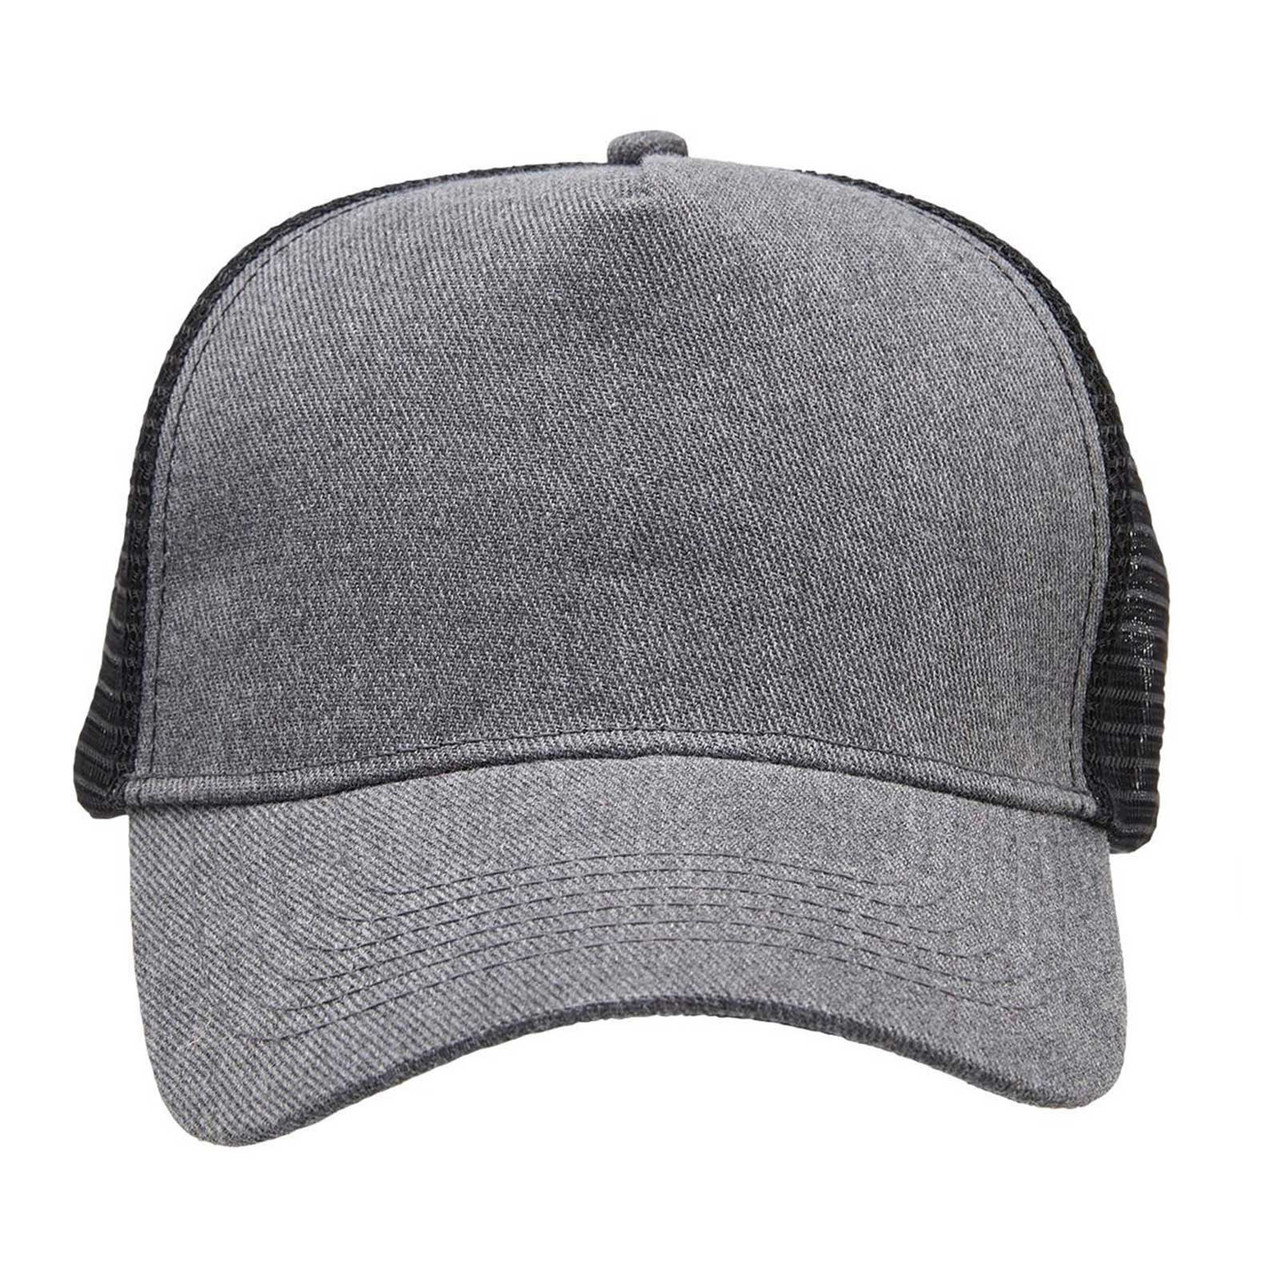 Buy Wholesale Heathered Mesh Trucker Cap | Blank Headwear Online